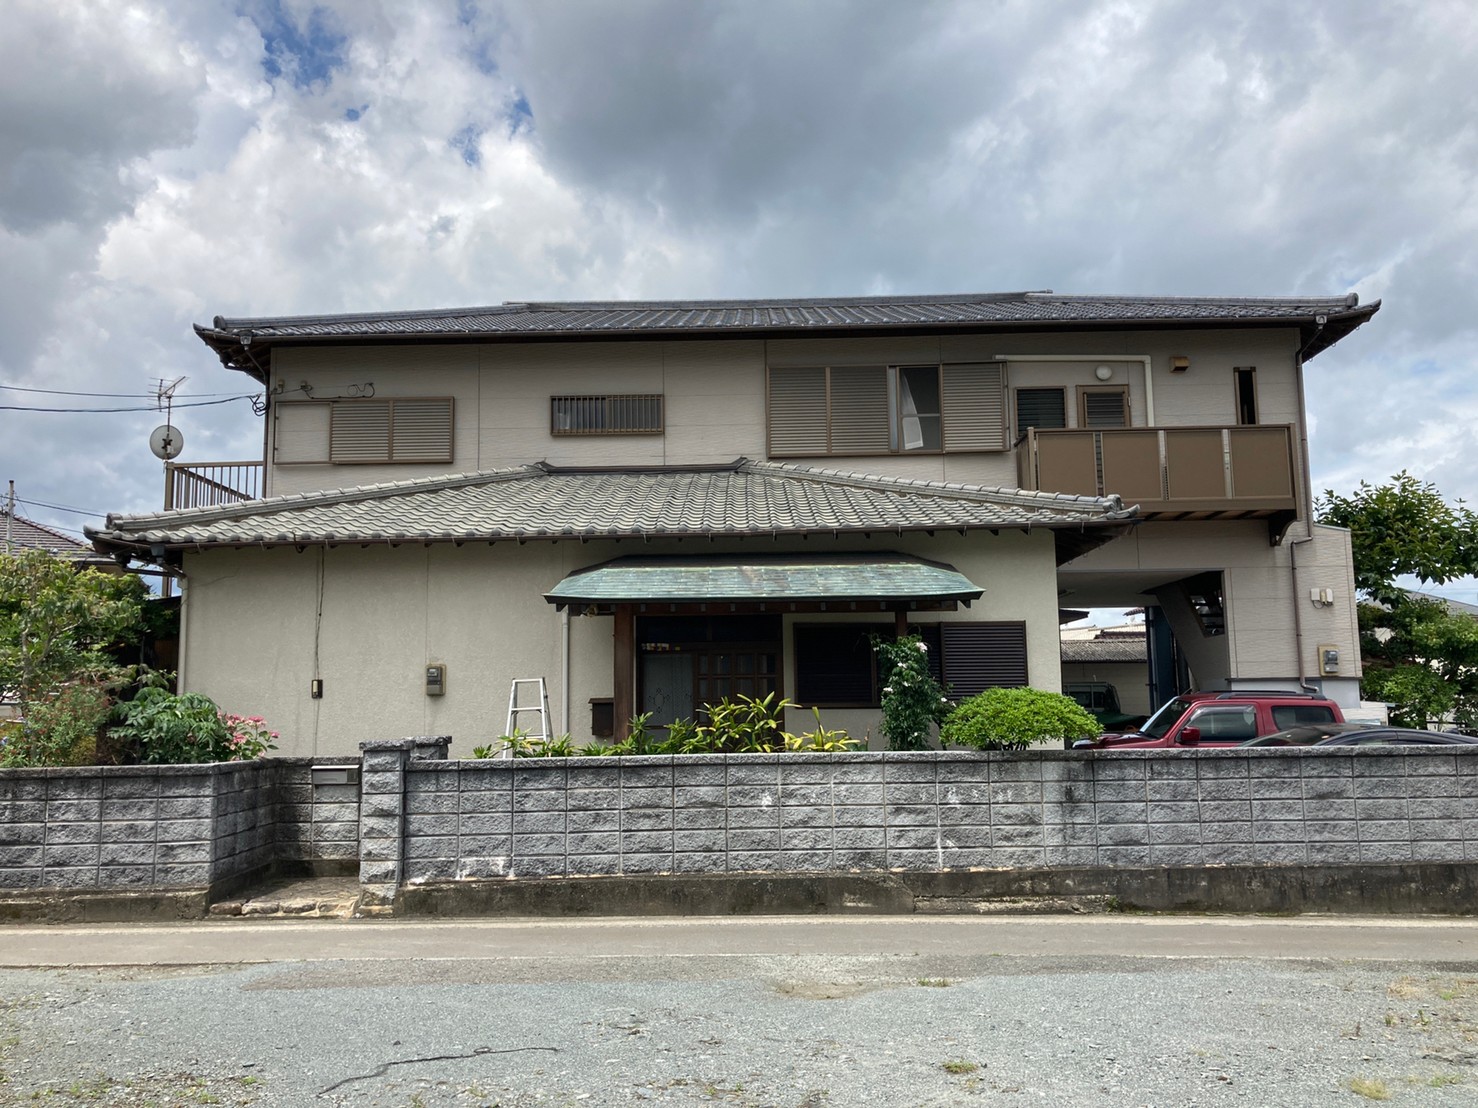 福岡県糟屋郡須恵町のK様邸で一部外壁をブルー系を使用したツートン仕上げで塗装しサイディング外壁部分のコーキングも打ち替えました。11/5完成です。【ホームページより】